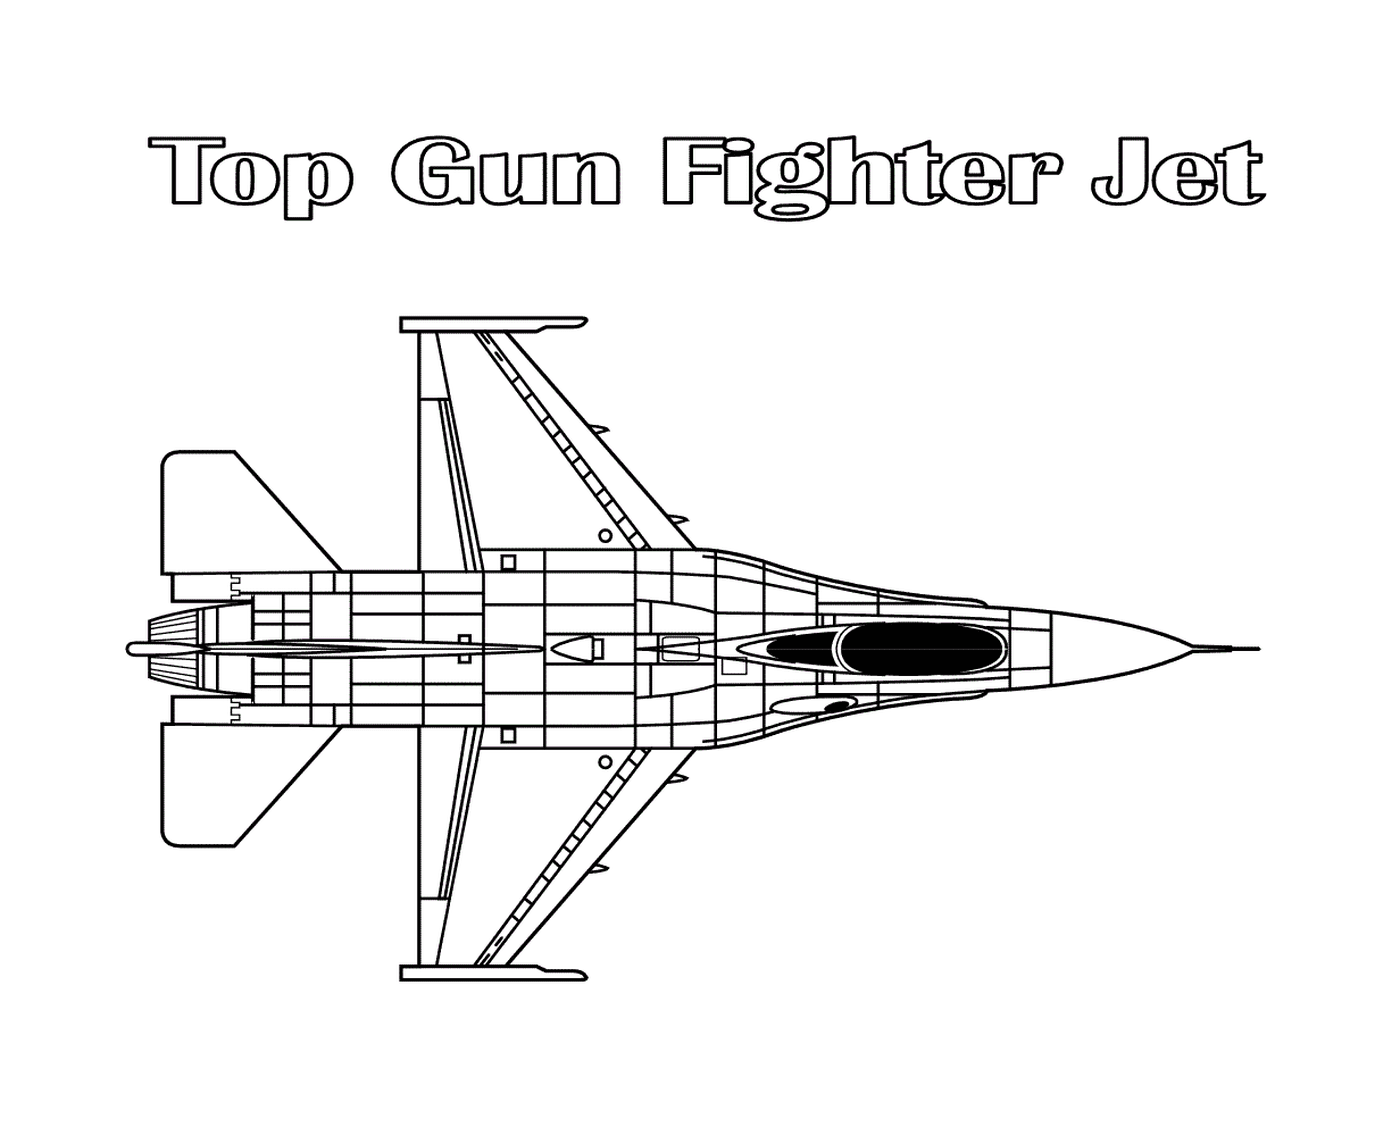  Avión de combate con armas de fuego superior 